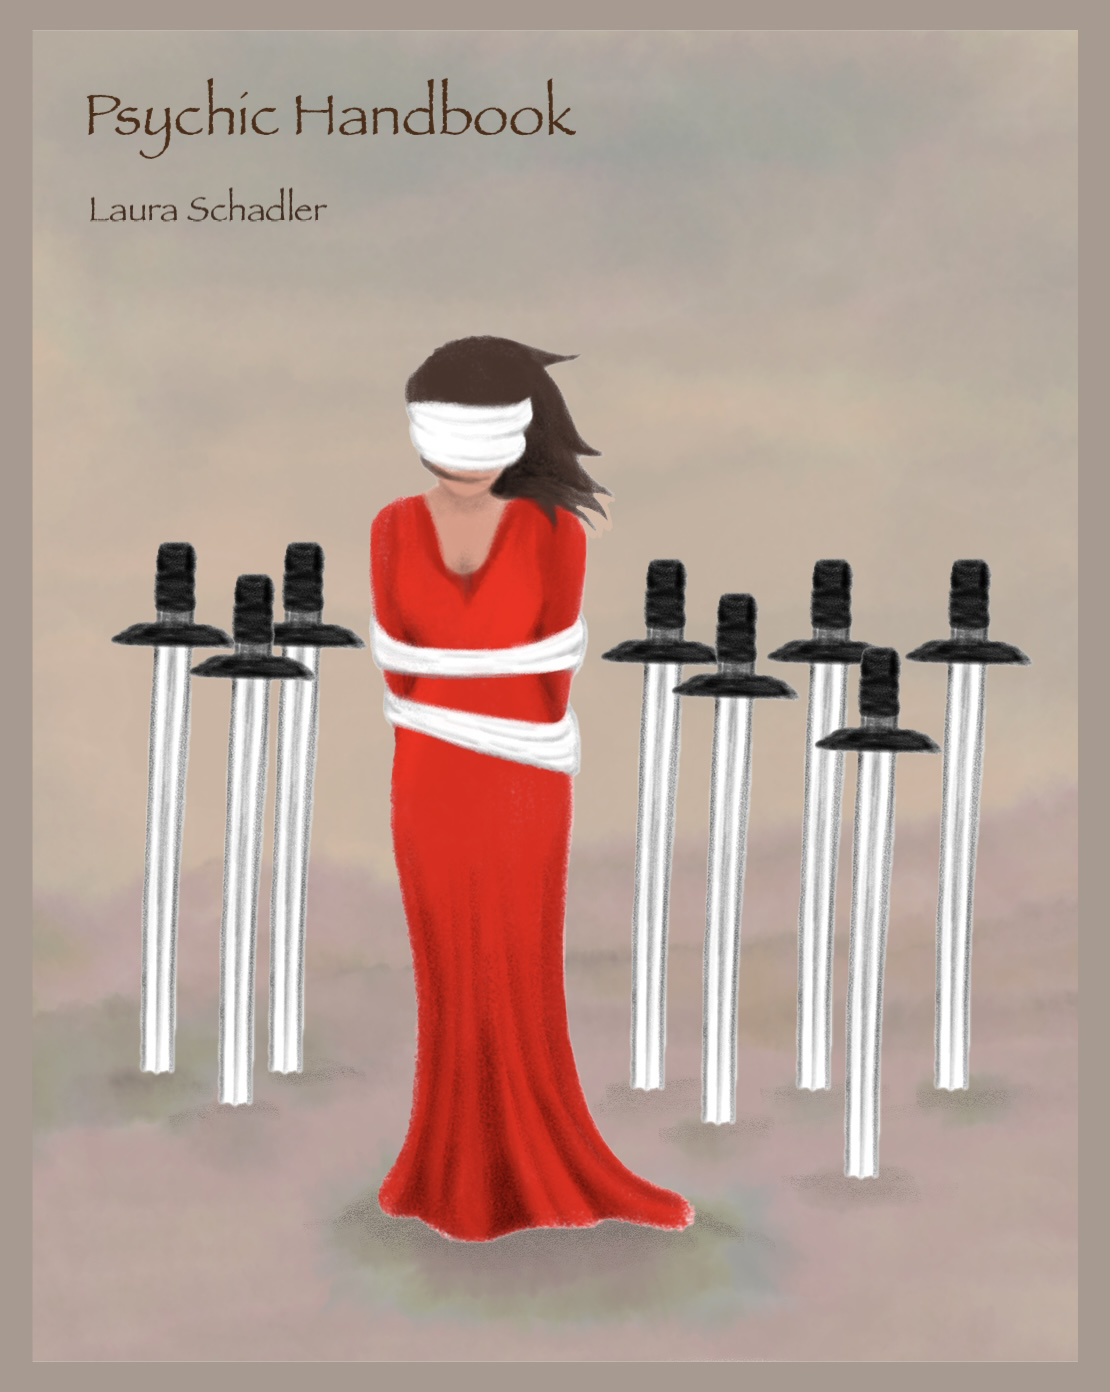 Psychic Handbook by Laura Schadler